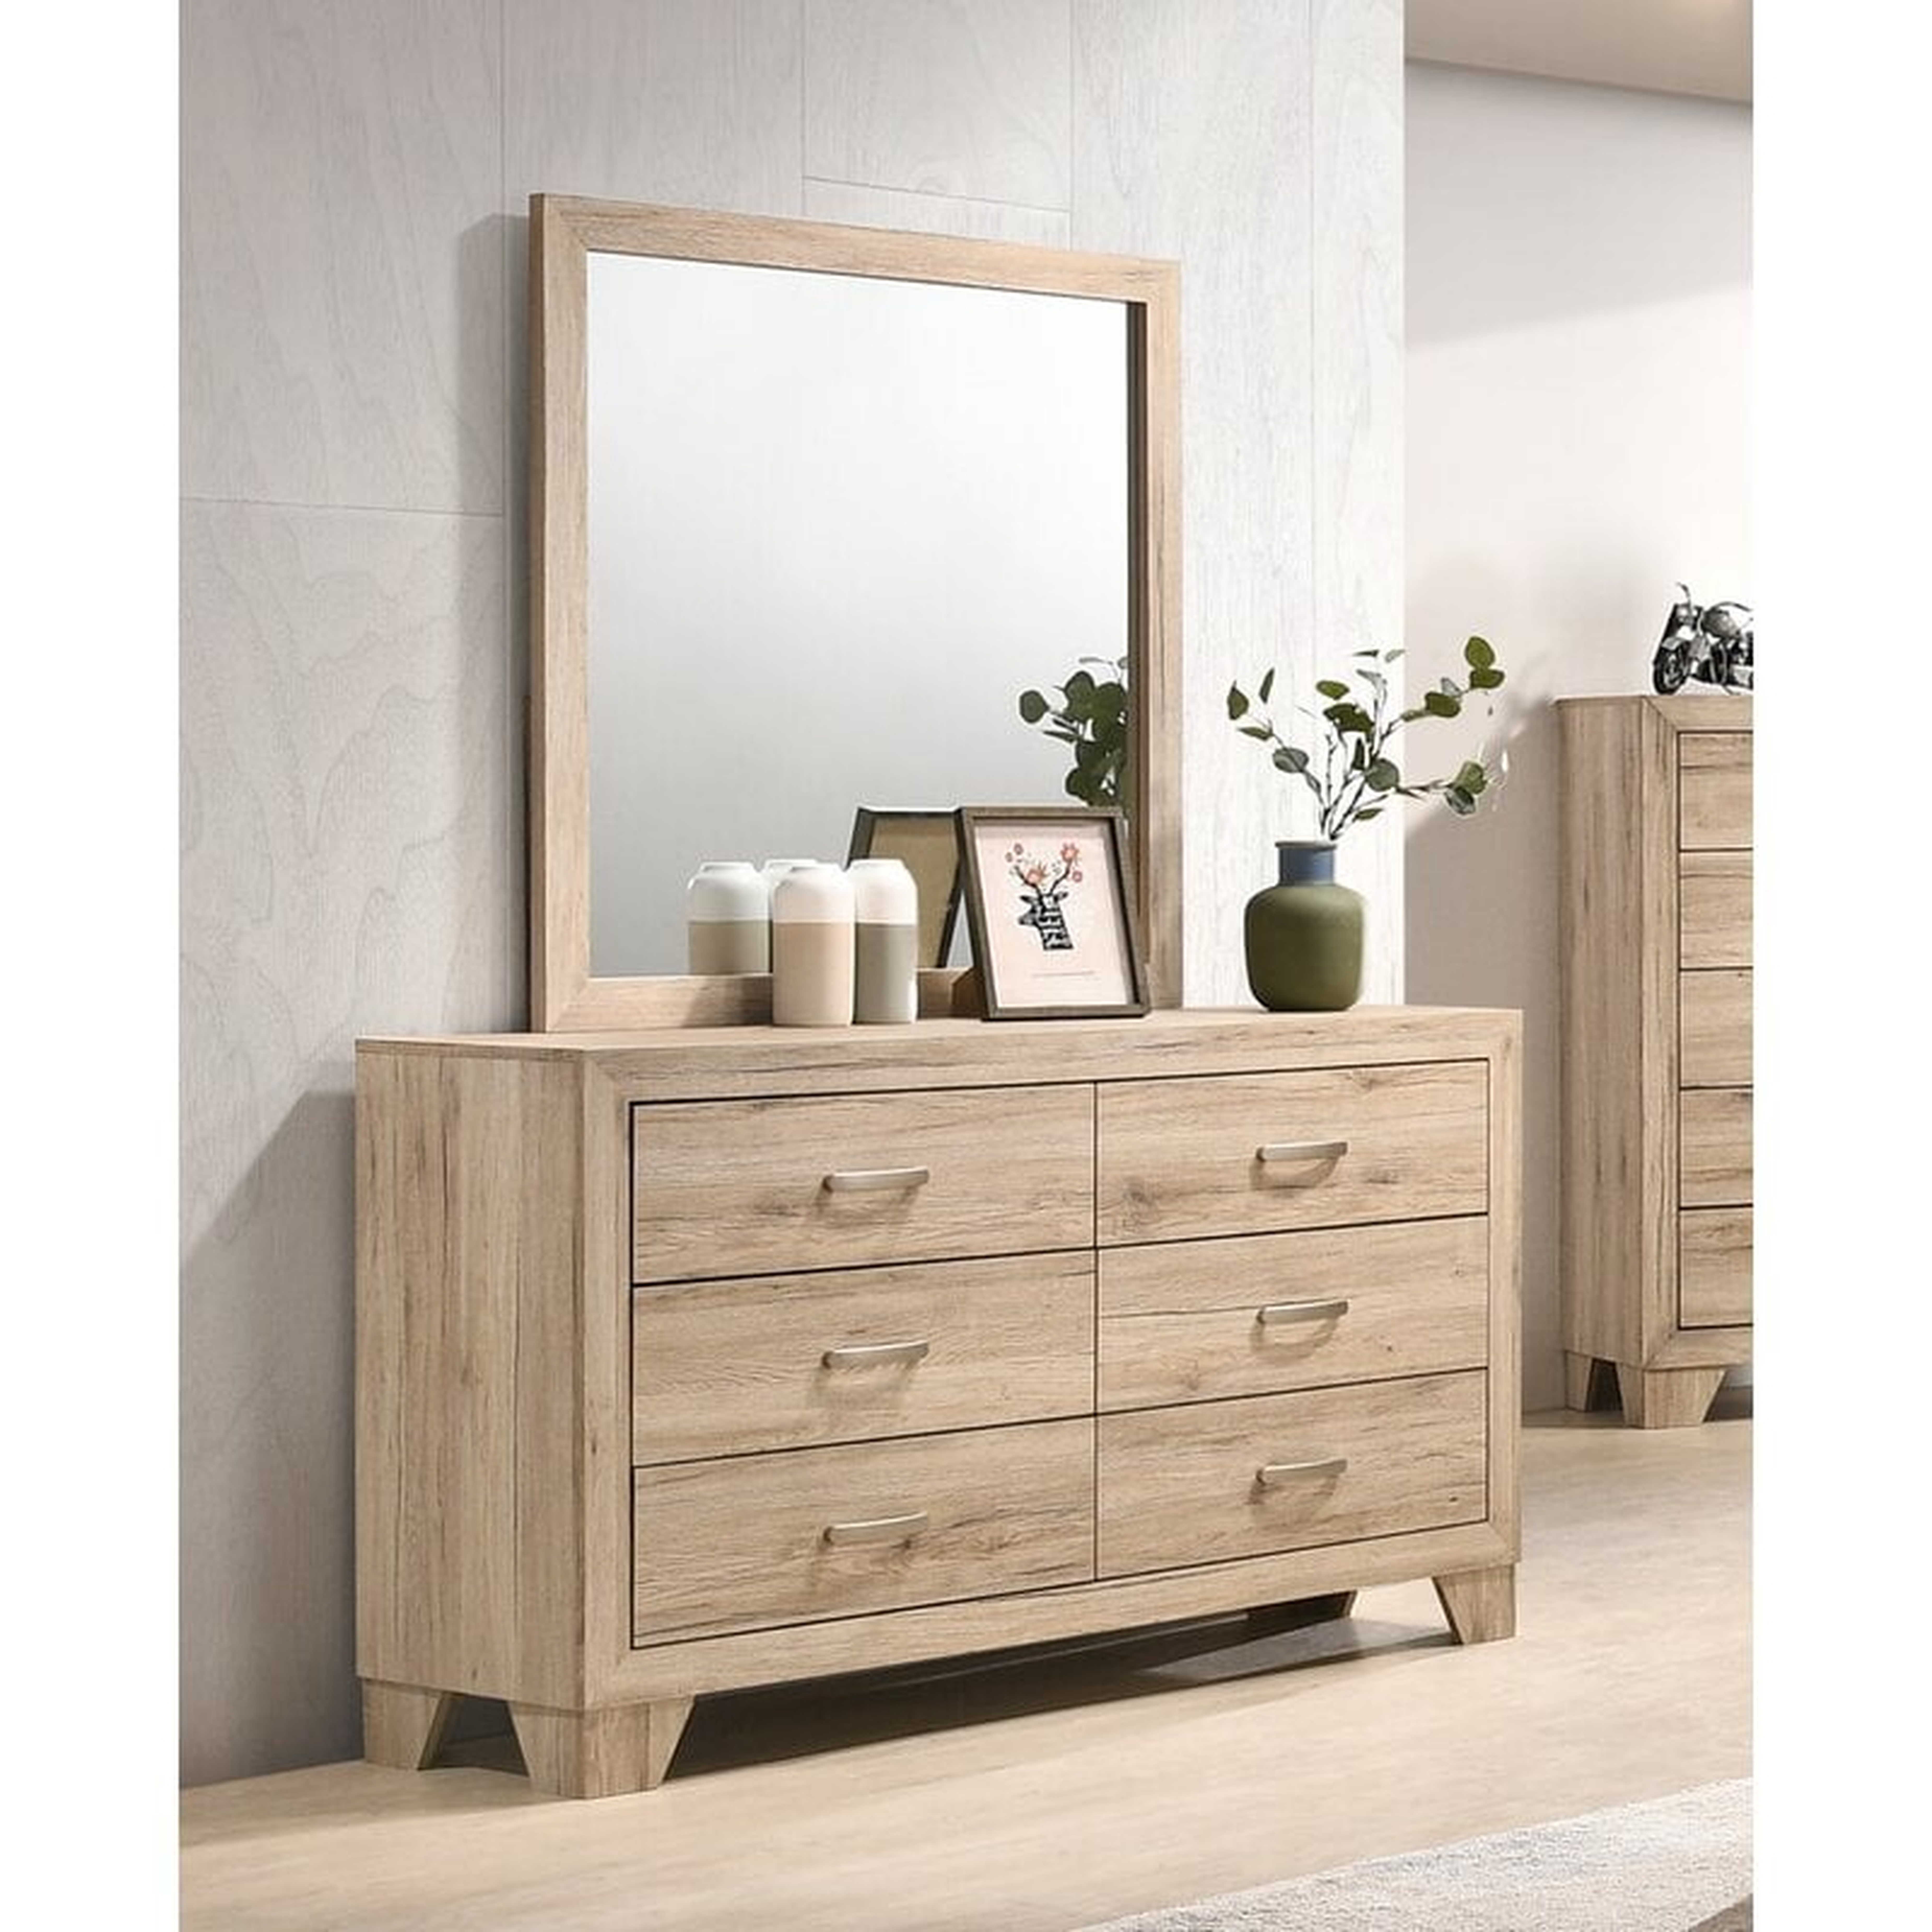 Jaziel 6 Drawer Double Dresser with Mirror - Wayfair